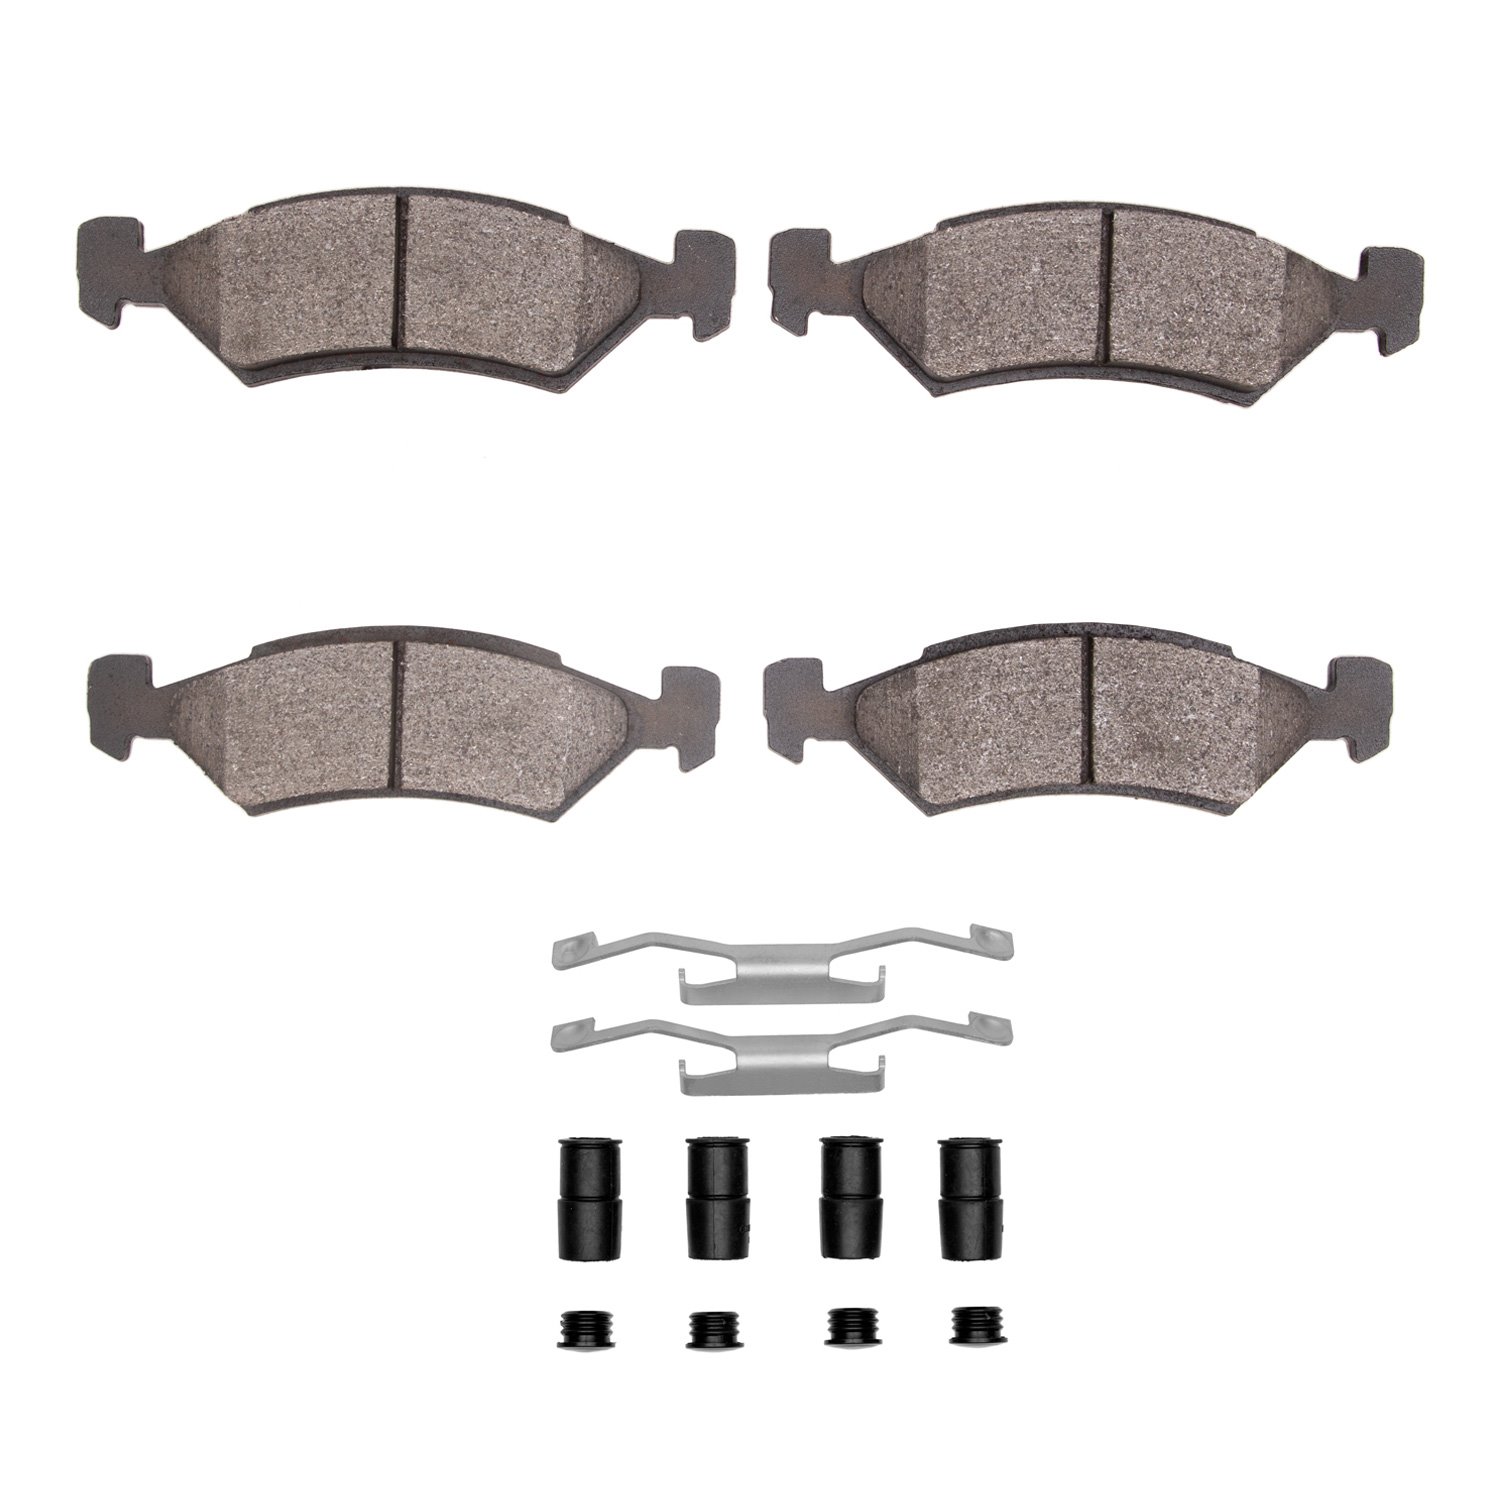 1311-0170-01 3000-Series Semi-Metallic Brake Pads & Hardware Kit, 1981-1989 Mopar, Position: Front